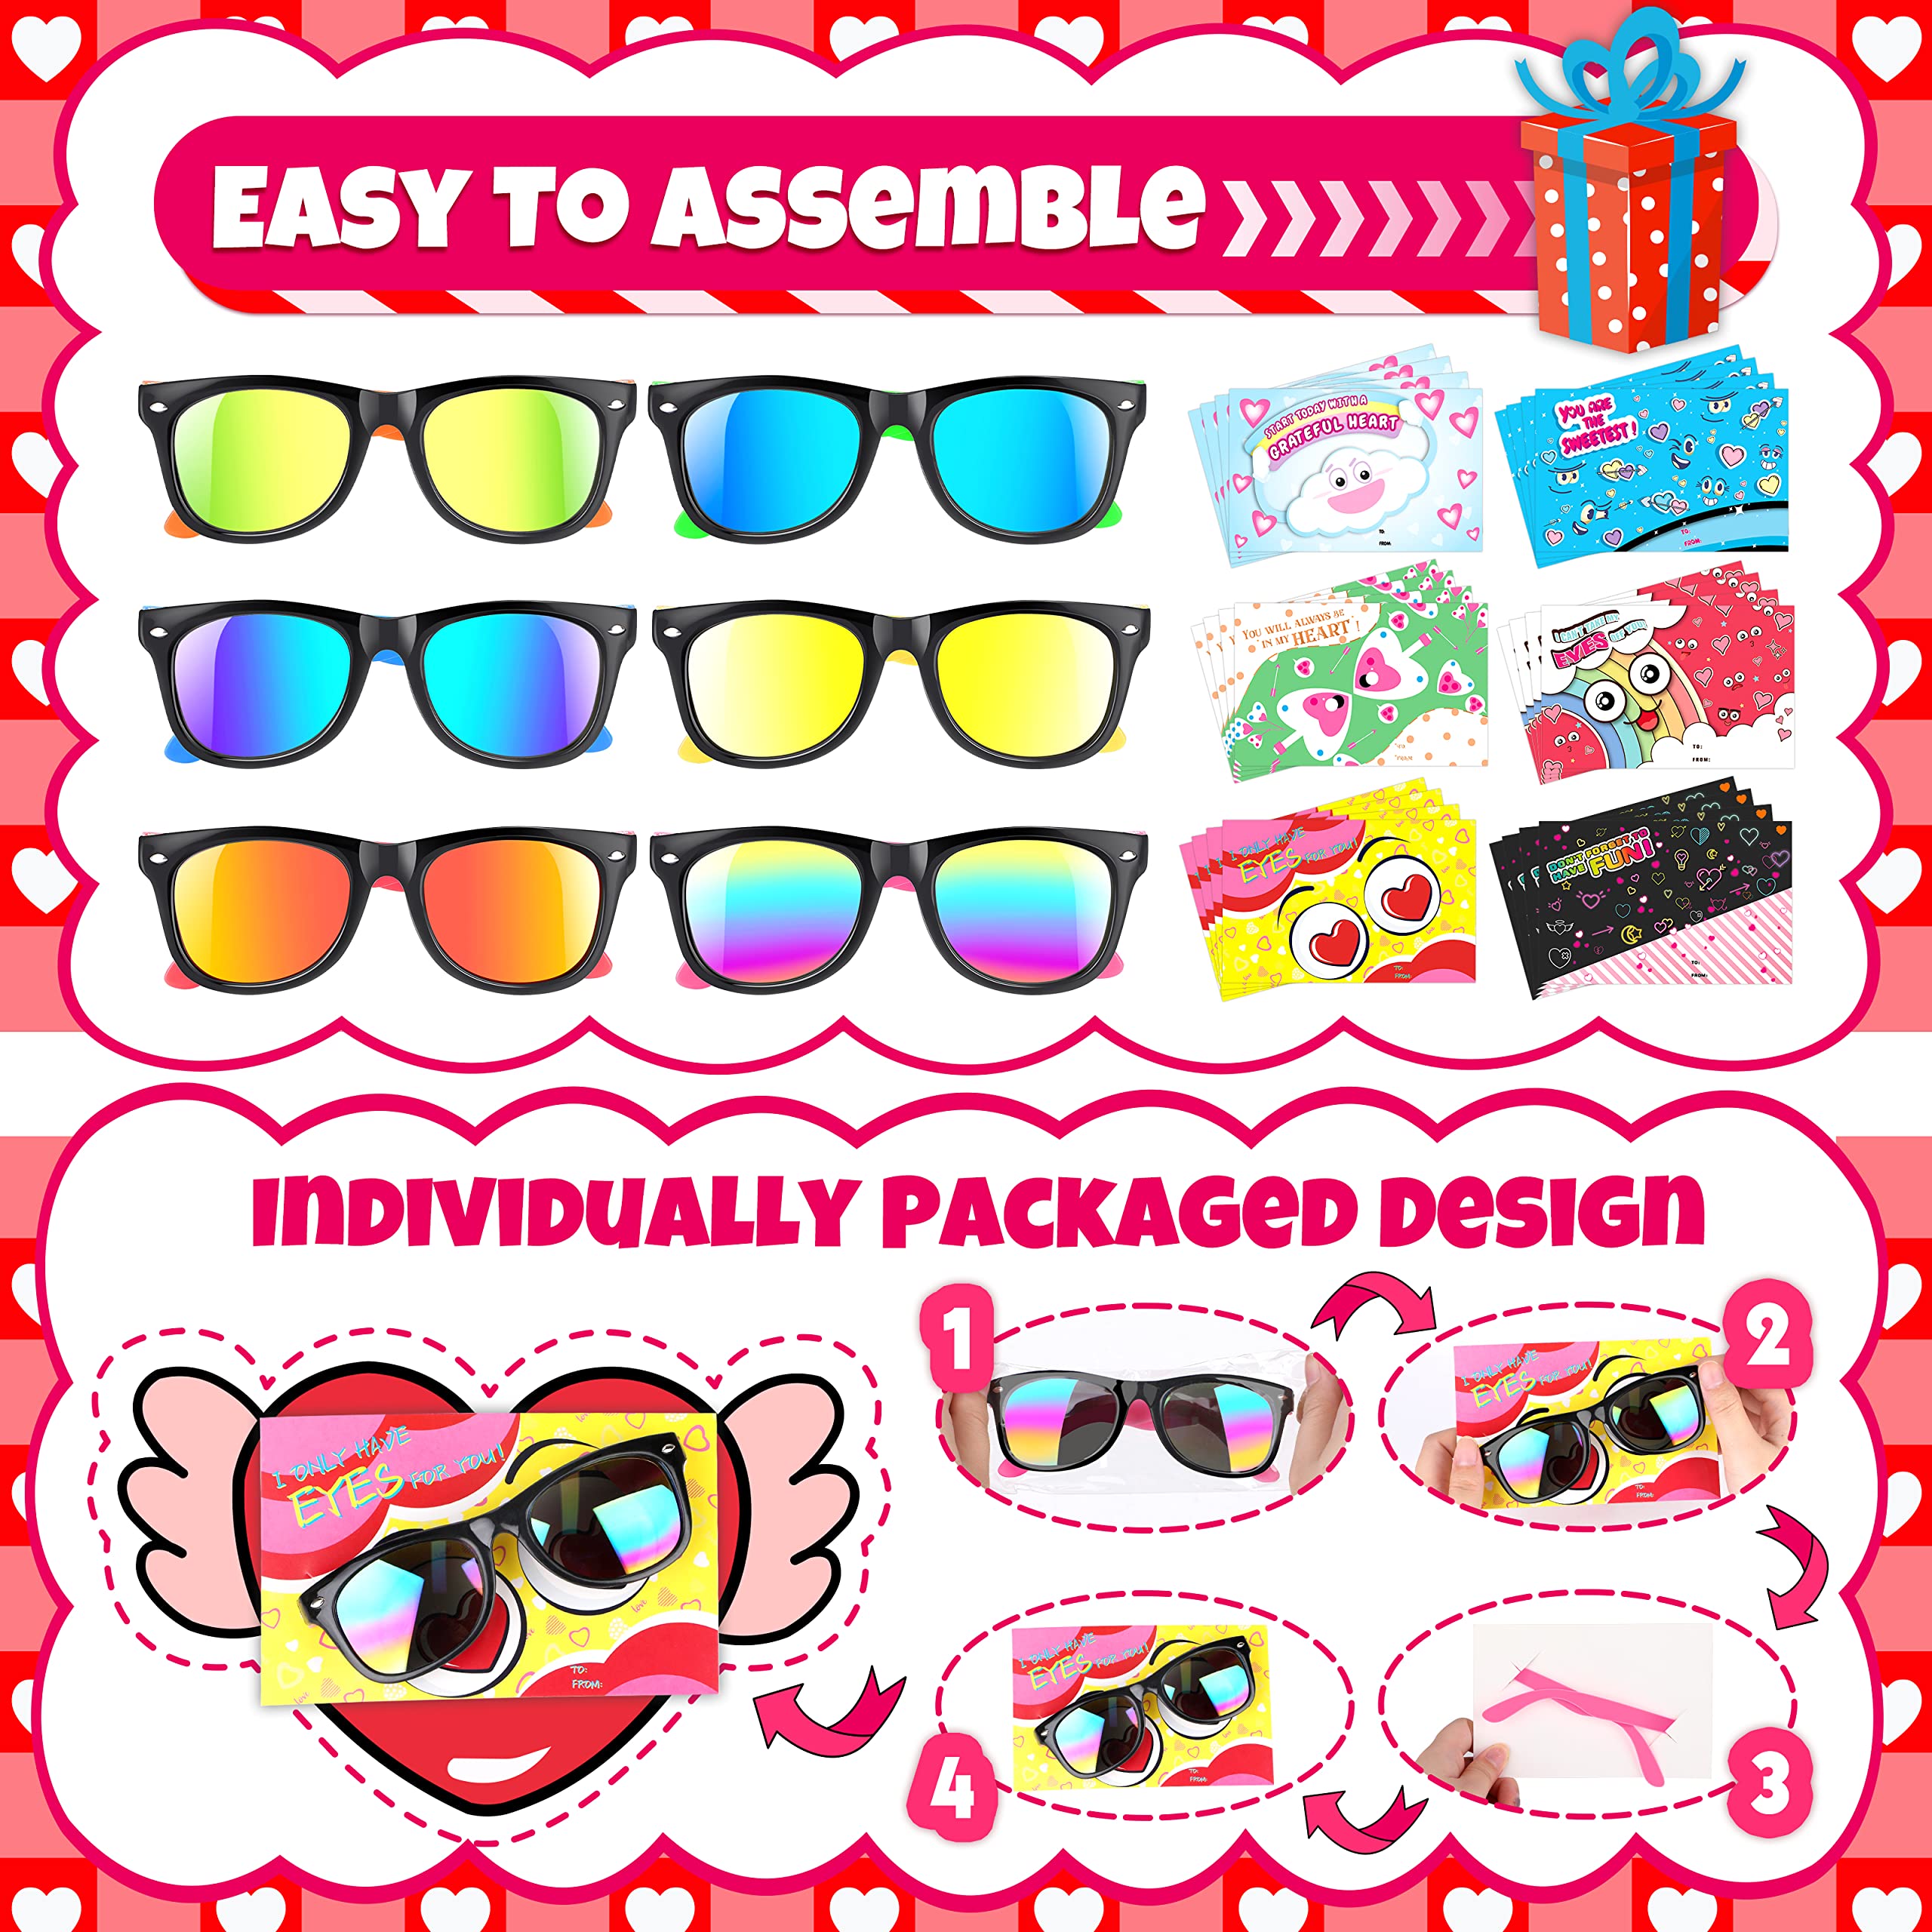 GIFTINBOX 24 Pack Kids Sunglasses Bulk, Easter Party Favors Sunglasses for Kids, Easter Basket Stuffers Easter Gifts for Kids, B